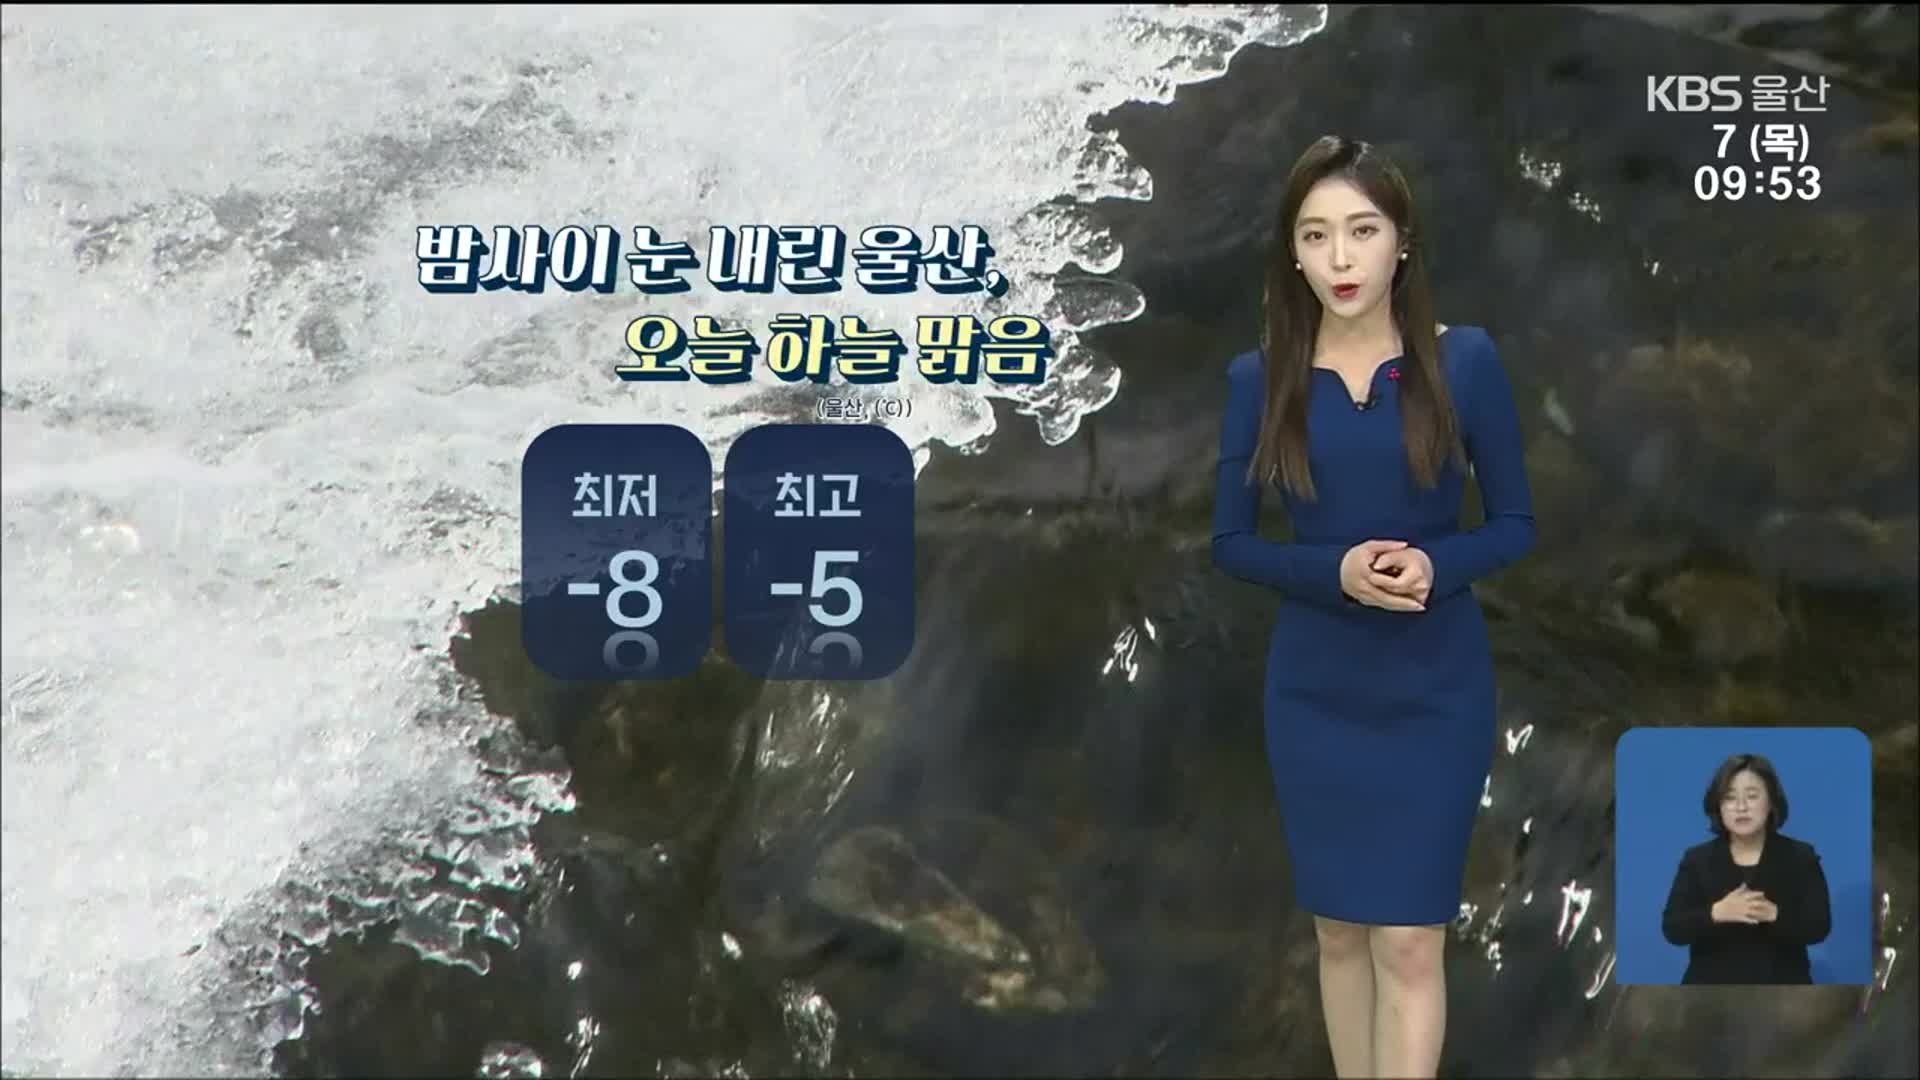 [날씨] 울산 강풍·건조주의보 발효…안전 사고 유의